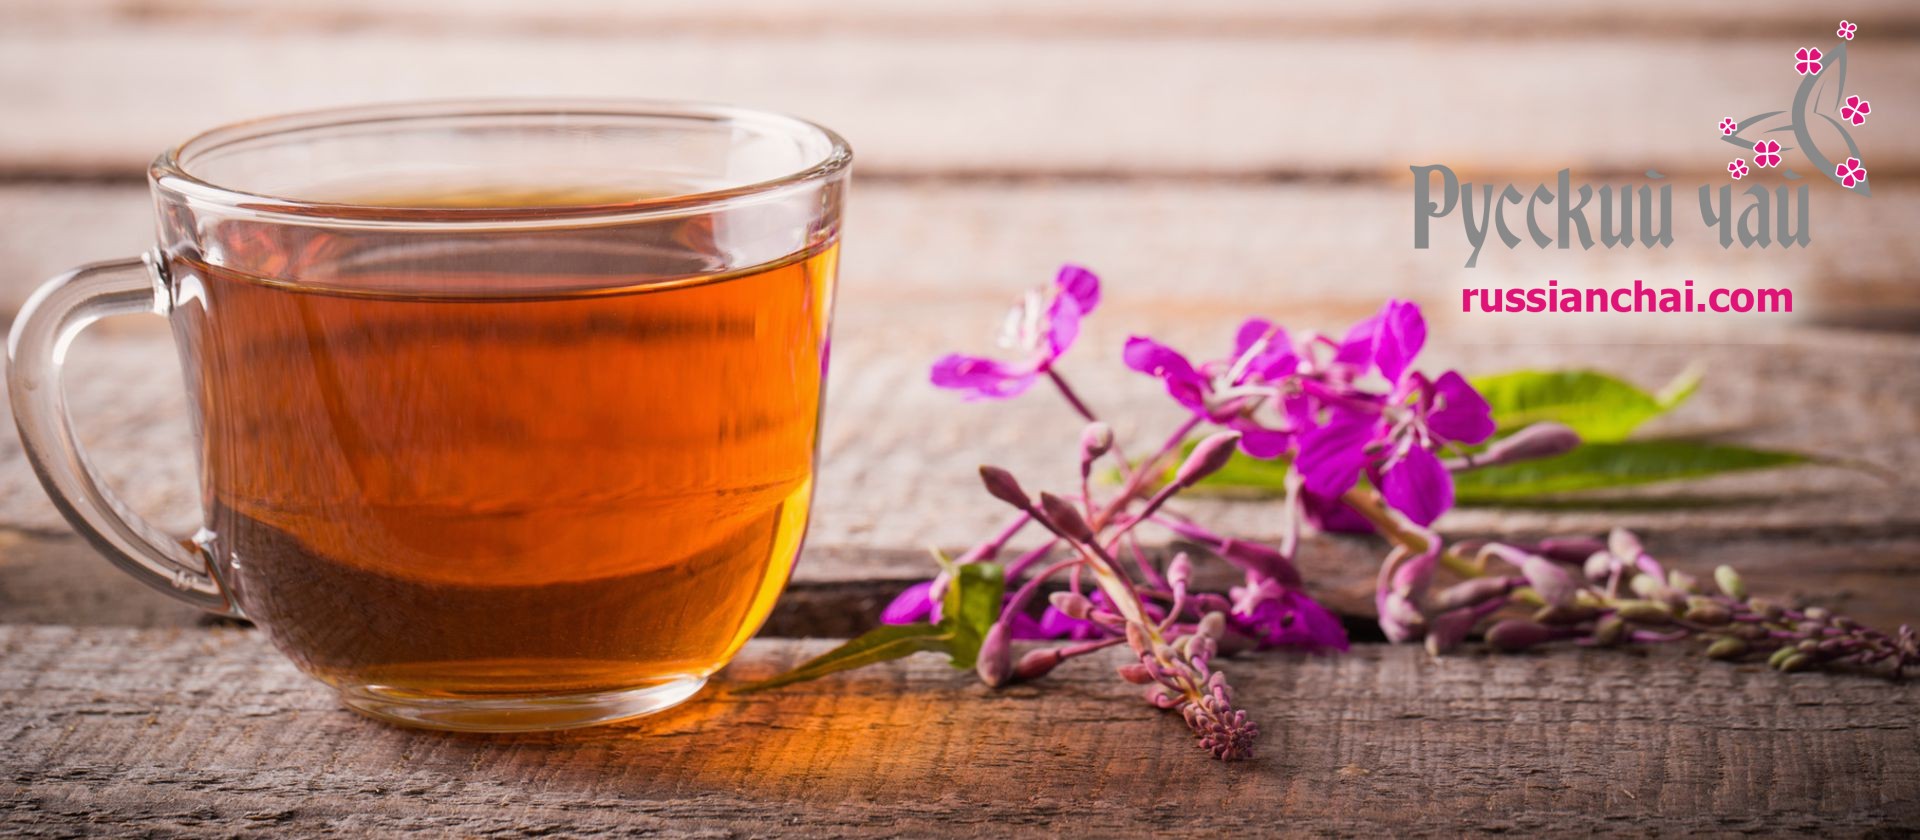 Ivan-tea, orosz tea, finom és gyógyító ital